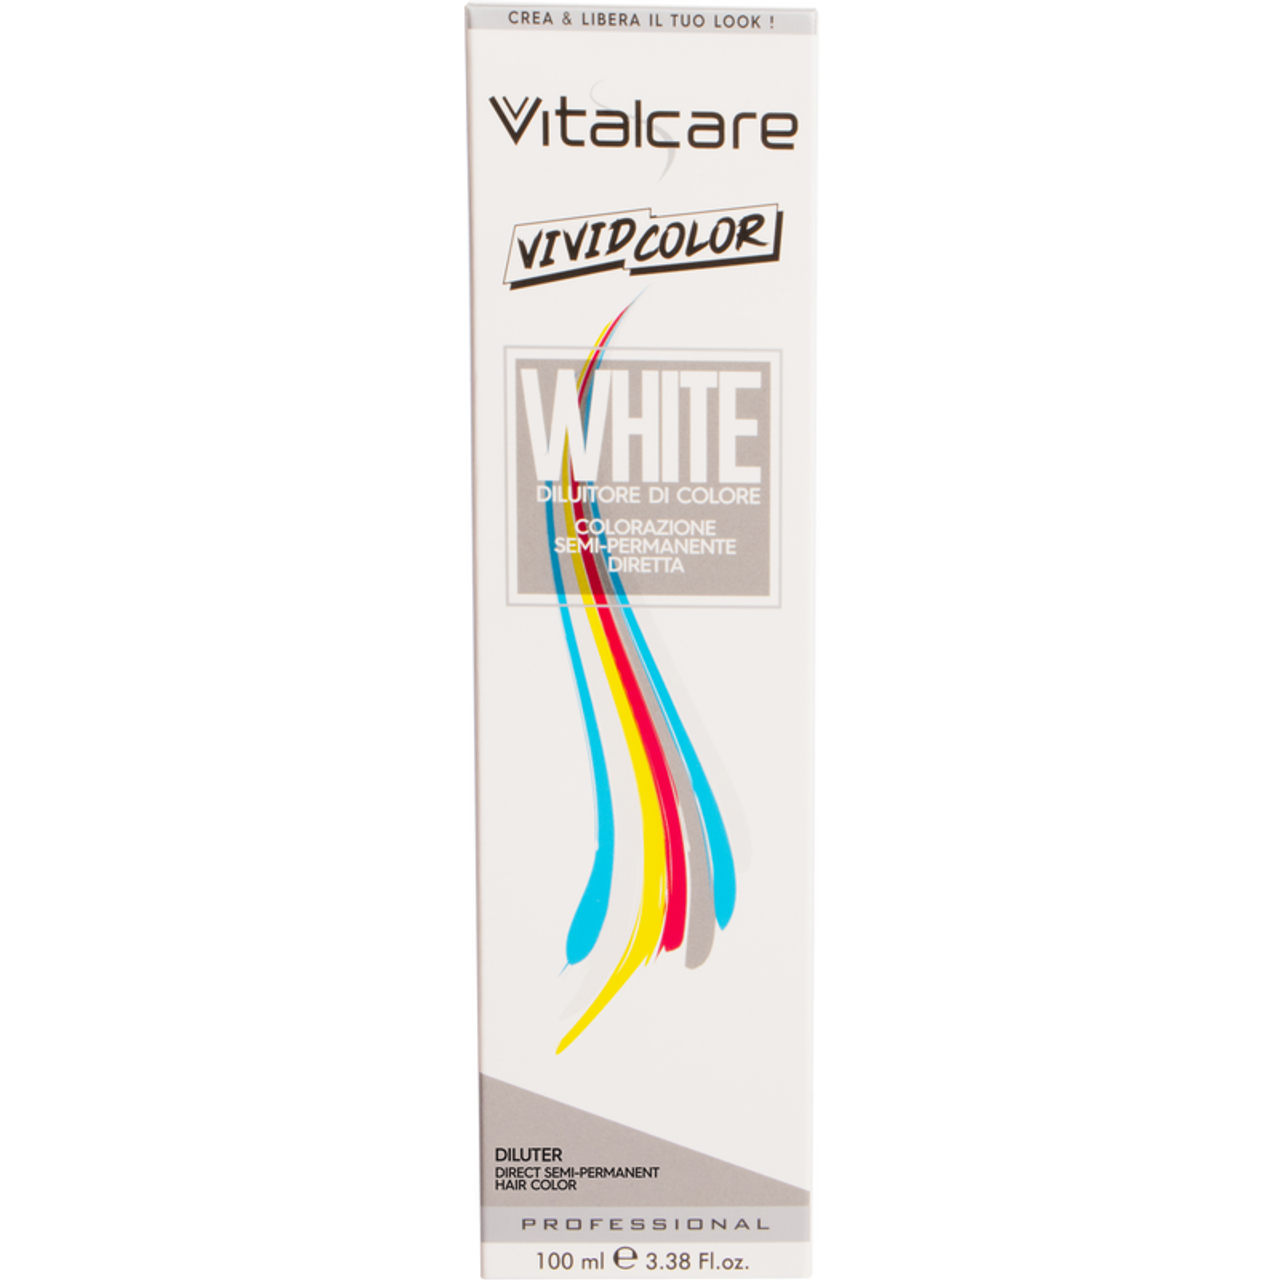 Разбавитель для временного окрашивания волос Vitalcare Vivid Color, 100 мл разбавитель для тату краски world famous color enhancer 120 мл